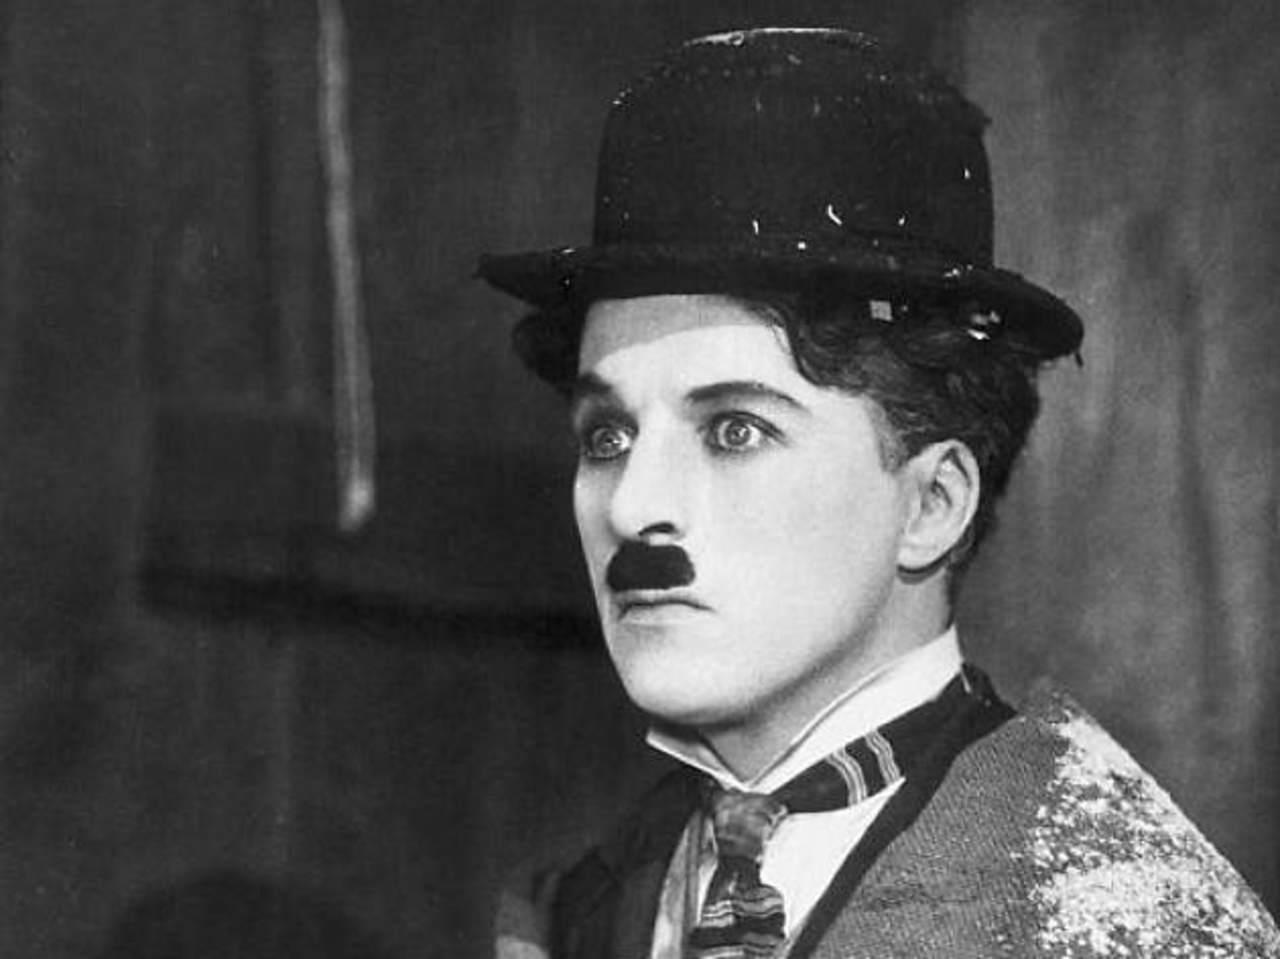 Chaplin perfeccionó un estilo personal de interpretación, derivado del payaso de circo y del mimo, combinando la elegancia acrobática, la expresividad del gesto y la elocuencia facial, con un sentido del ritmo impecable. (ESPECIAL)